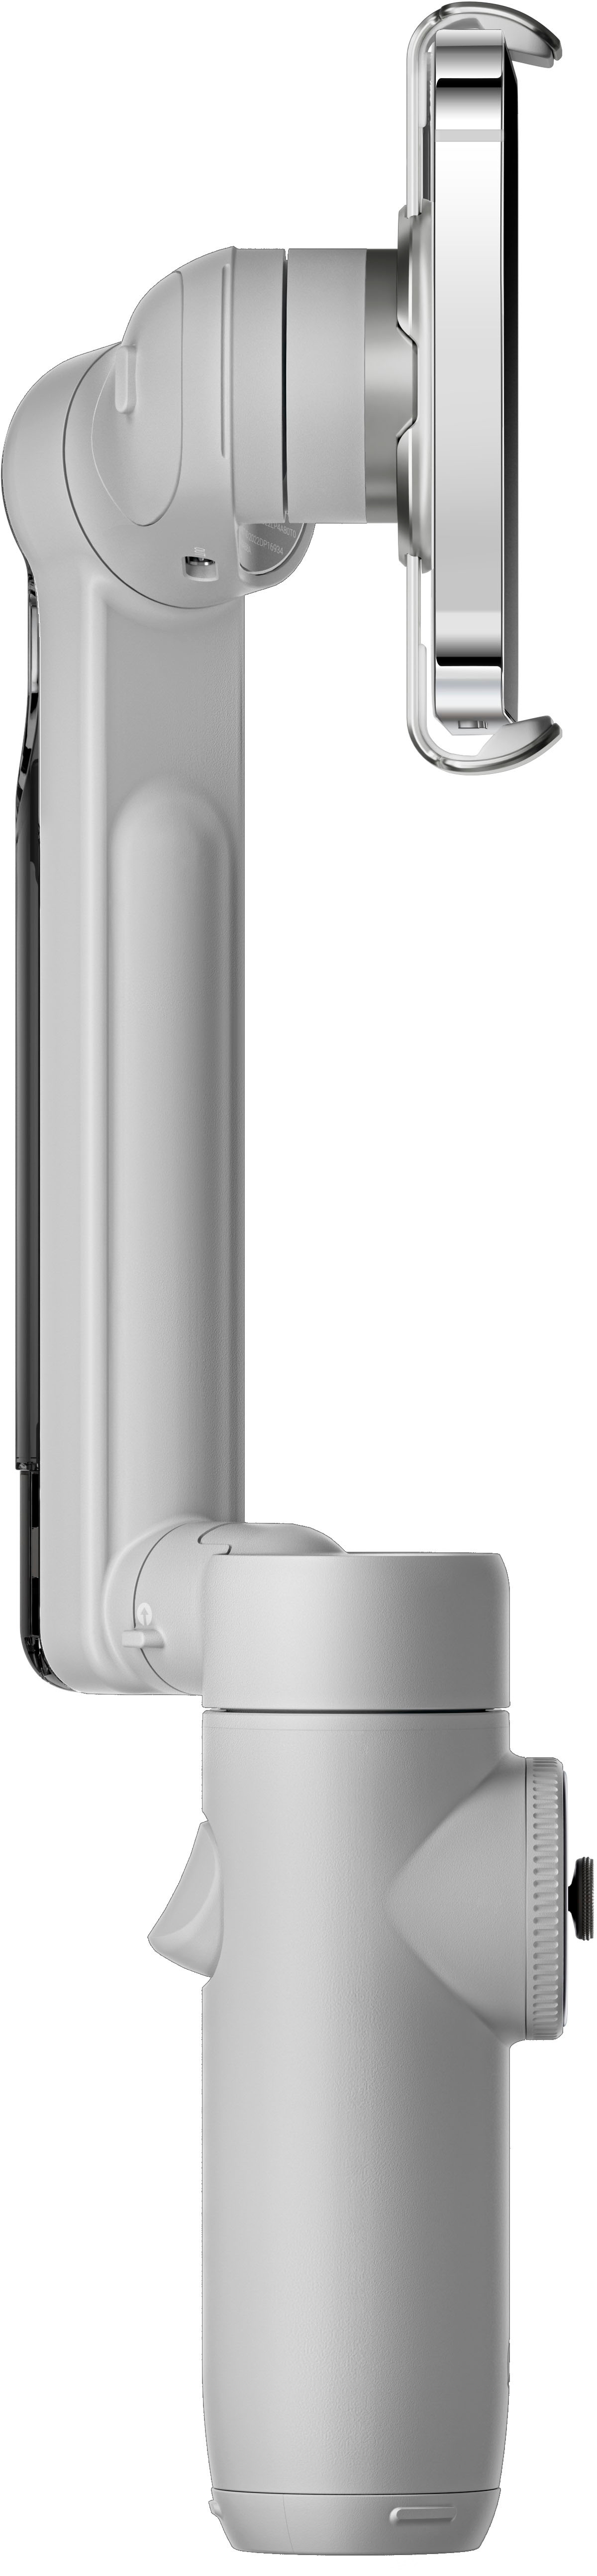 Insta360 Flow Standard 3-axis Gimbal Stabilizer for Smartphones ...